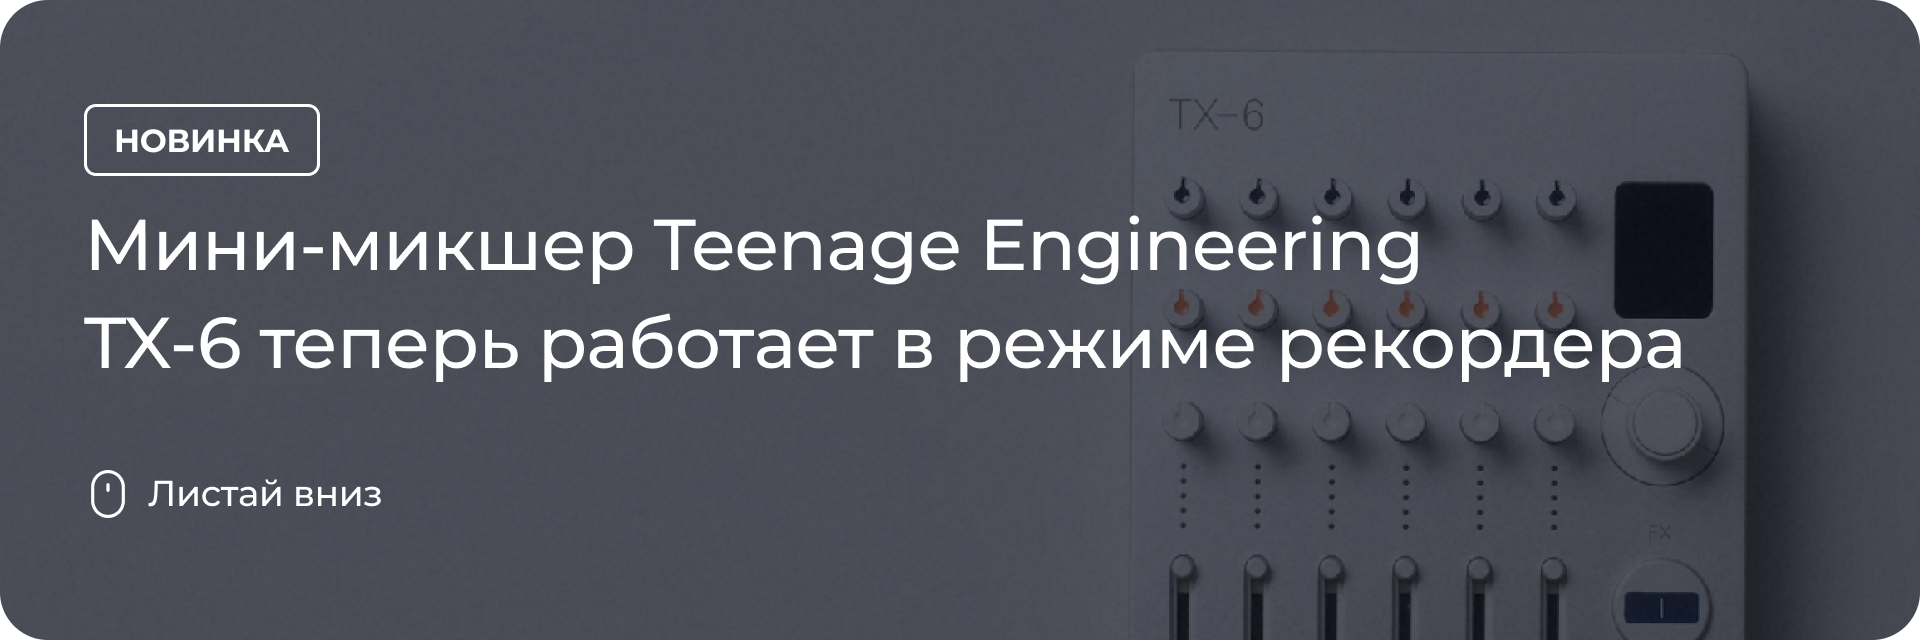 Teenage Engineering TX-6 теперь работает в режиме рекордера